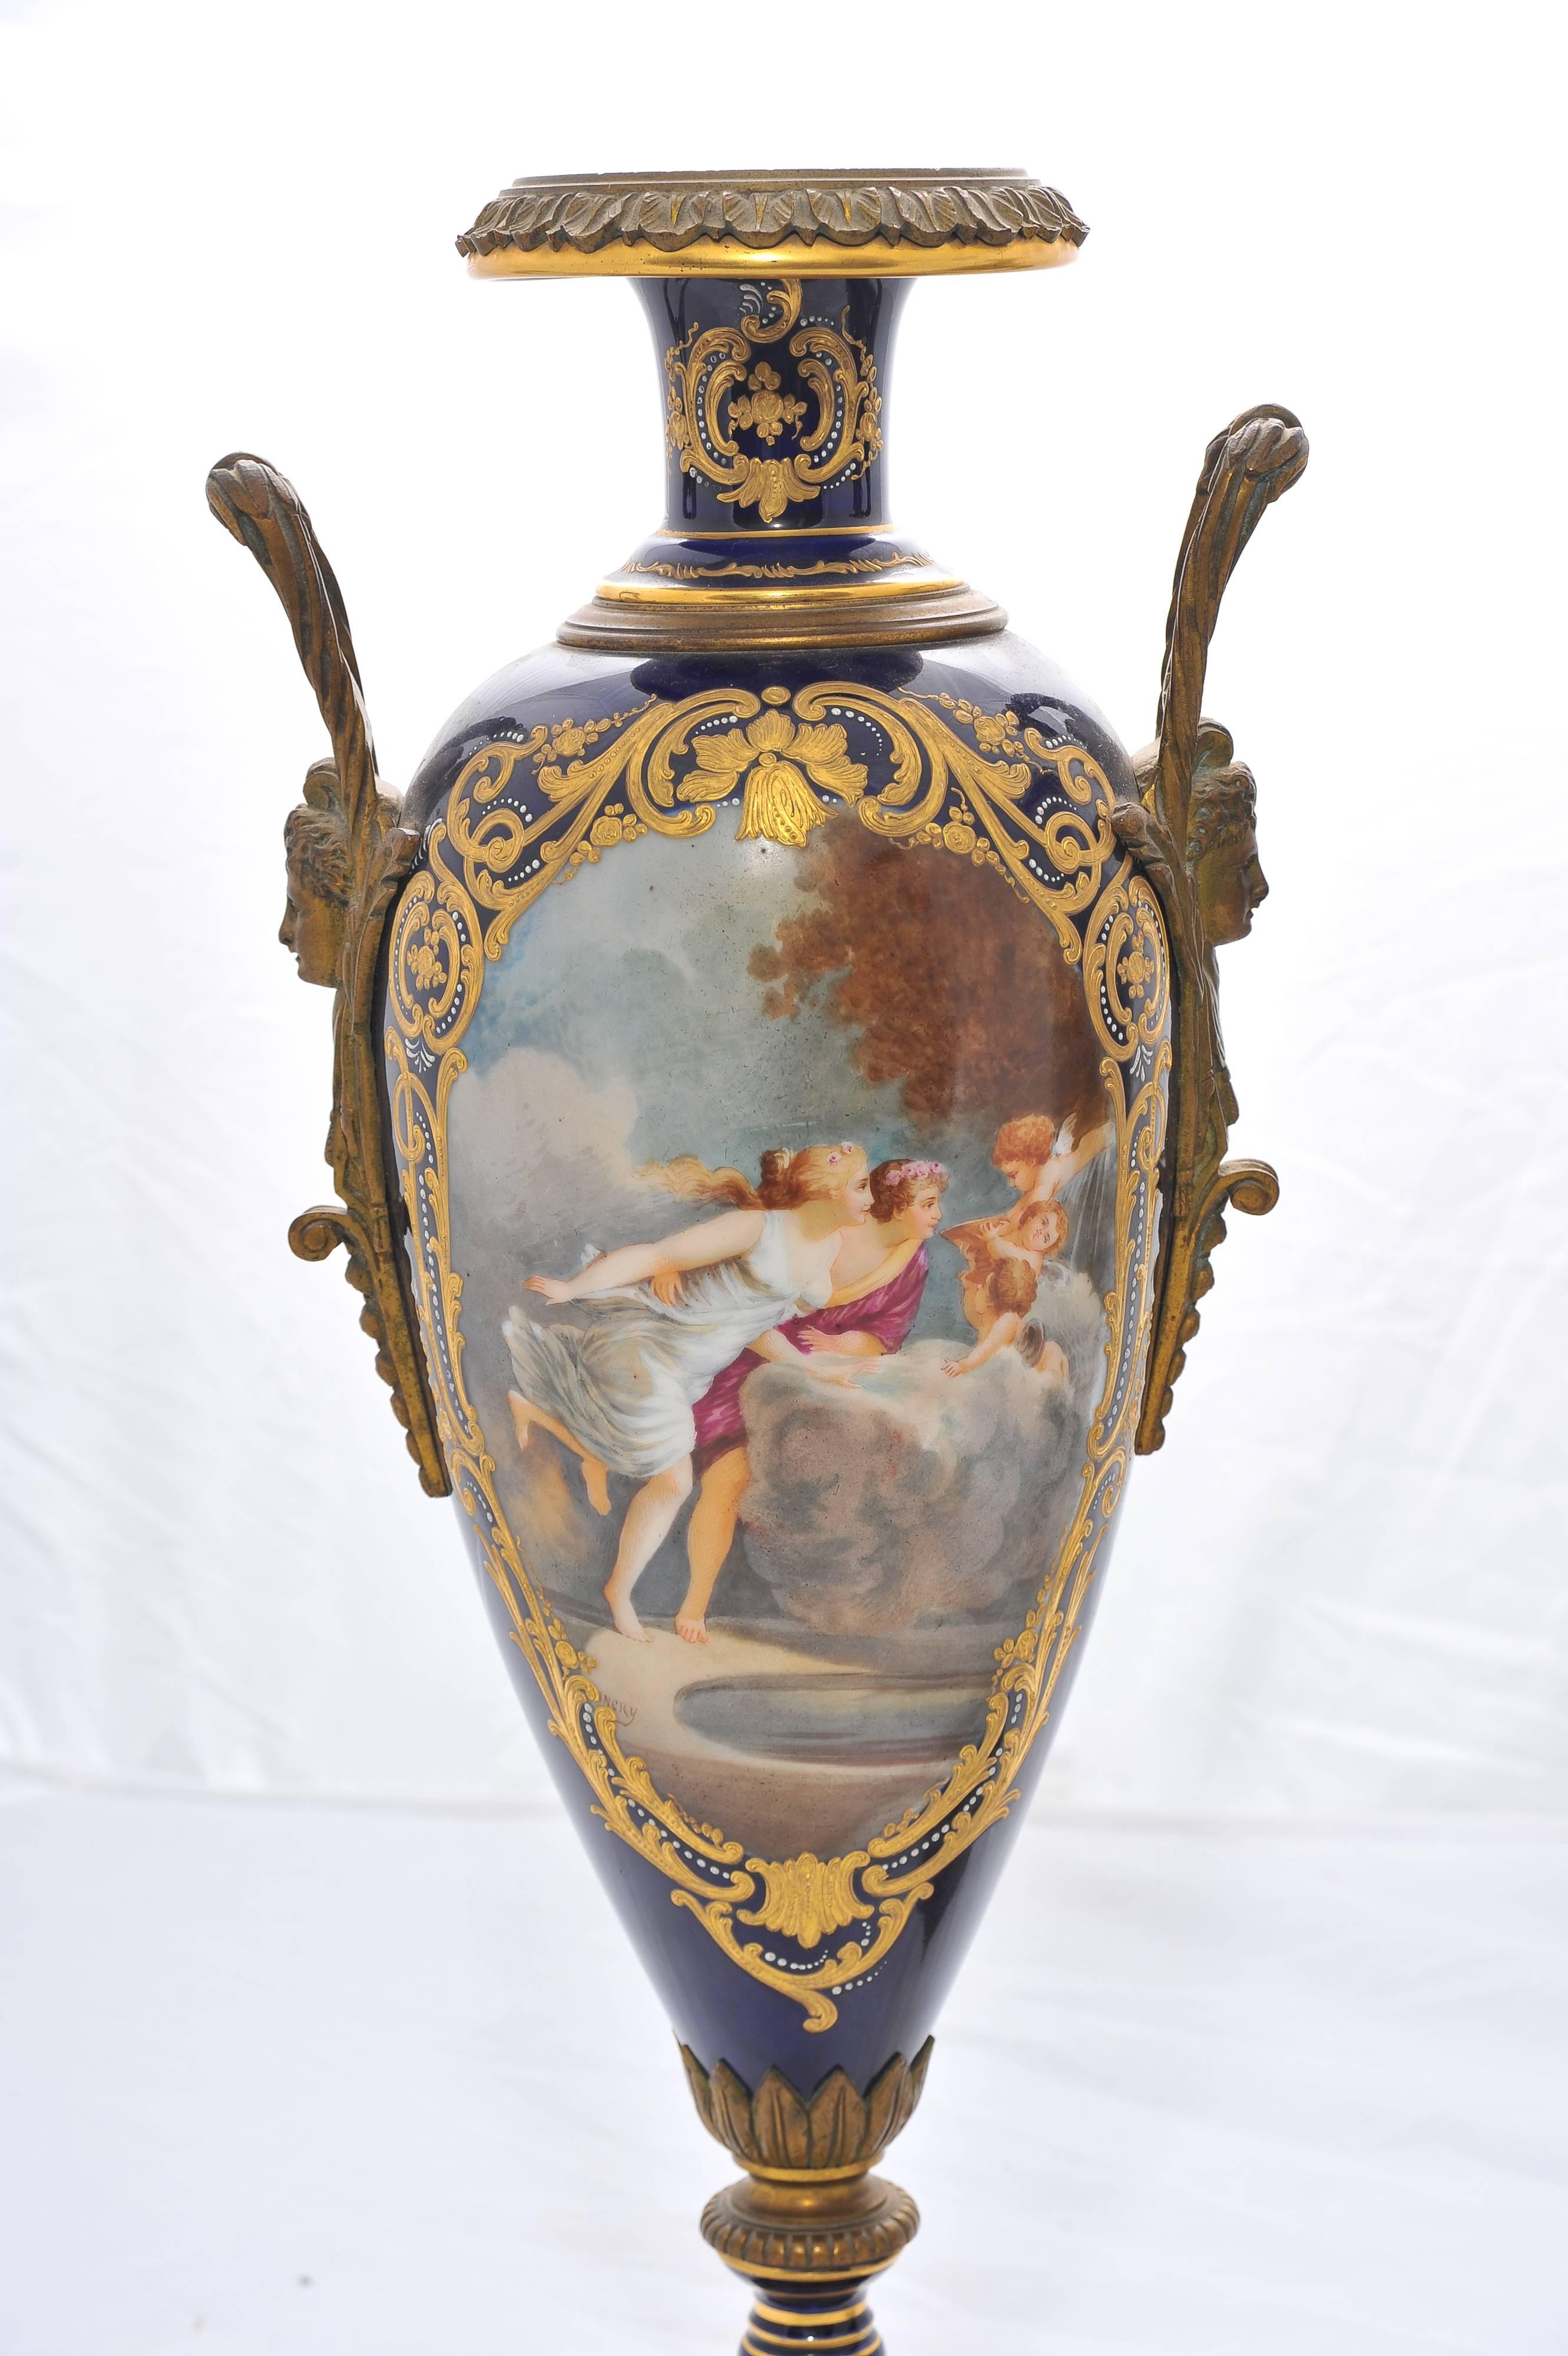 Paire de vases classiques de bonne qualité en porcelaine de Sèvres du XIXe siècle, peints à la main, représentant des scènes romantiques sur les panneaux, sur un fond bleu foncé avec une décoration dorée et reposant sur des bases en bronze doré.